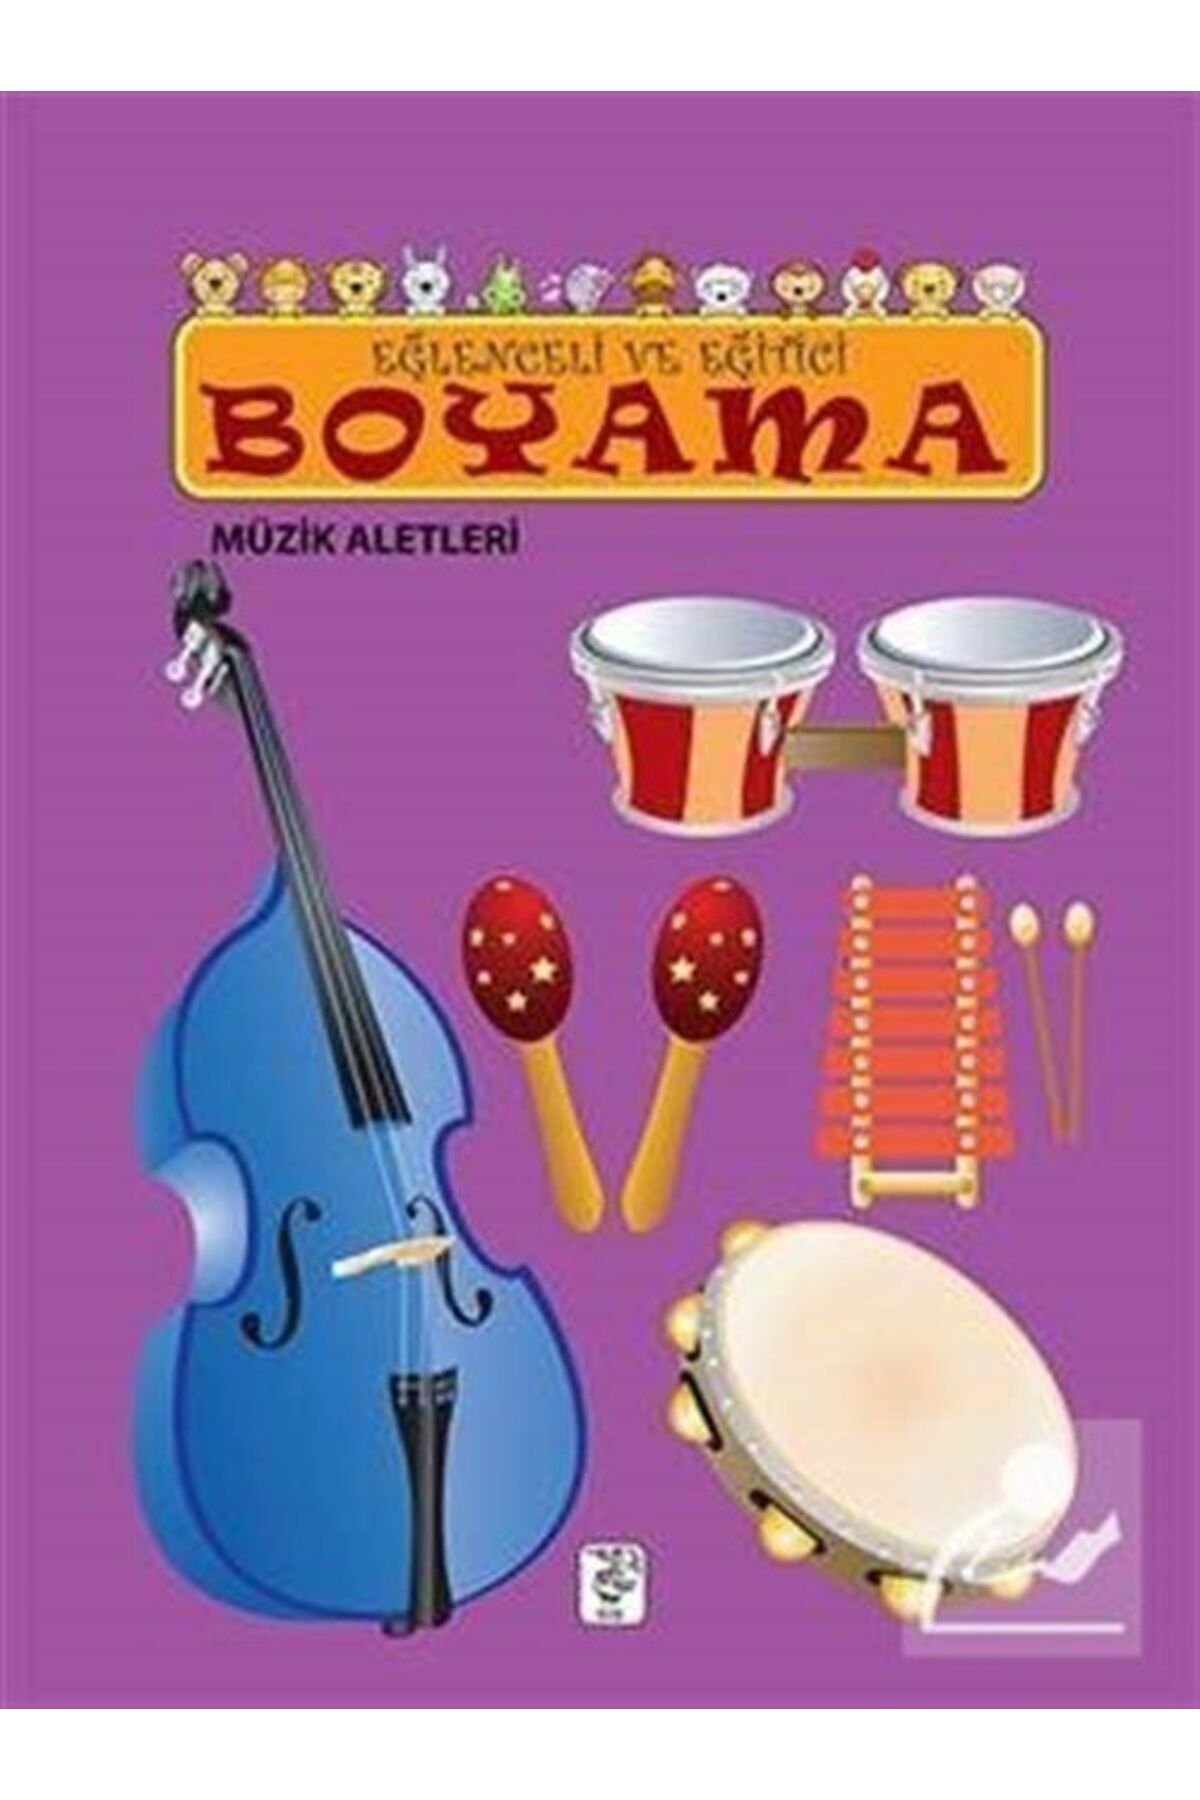 Sis Yayınları Müzik Aletleri / Eğlenceli Ve Eğitici Boyama